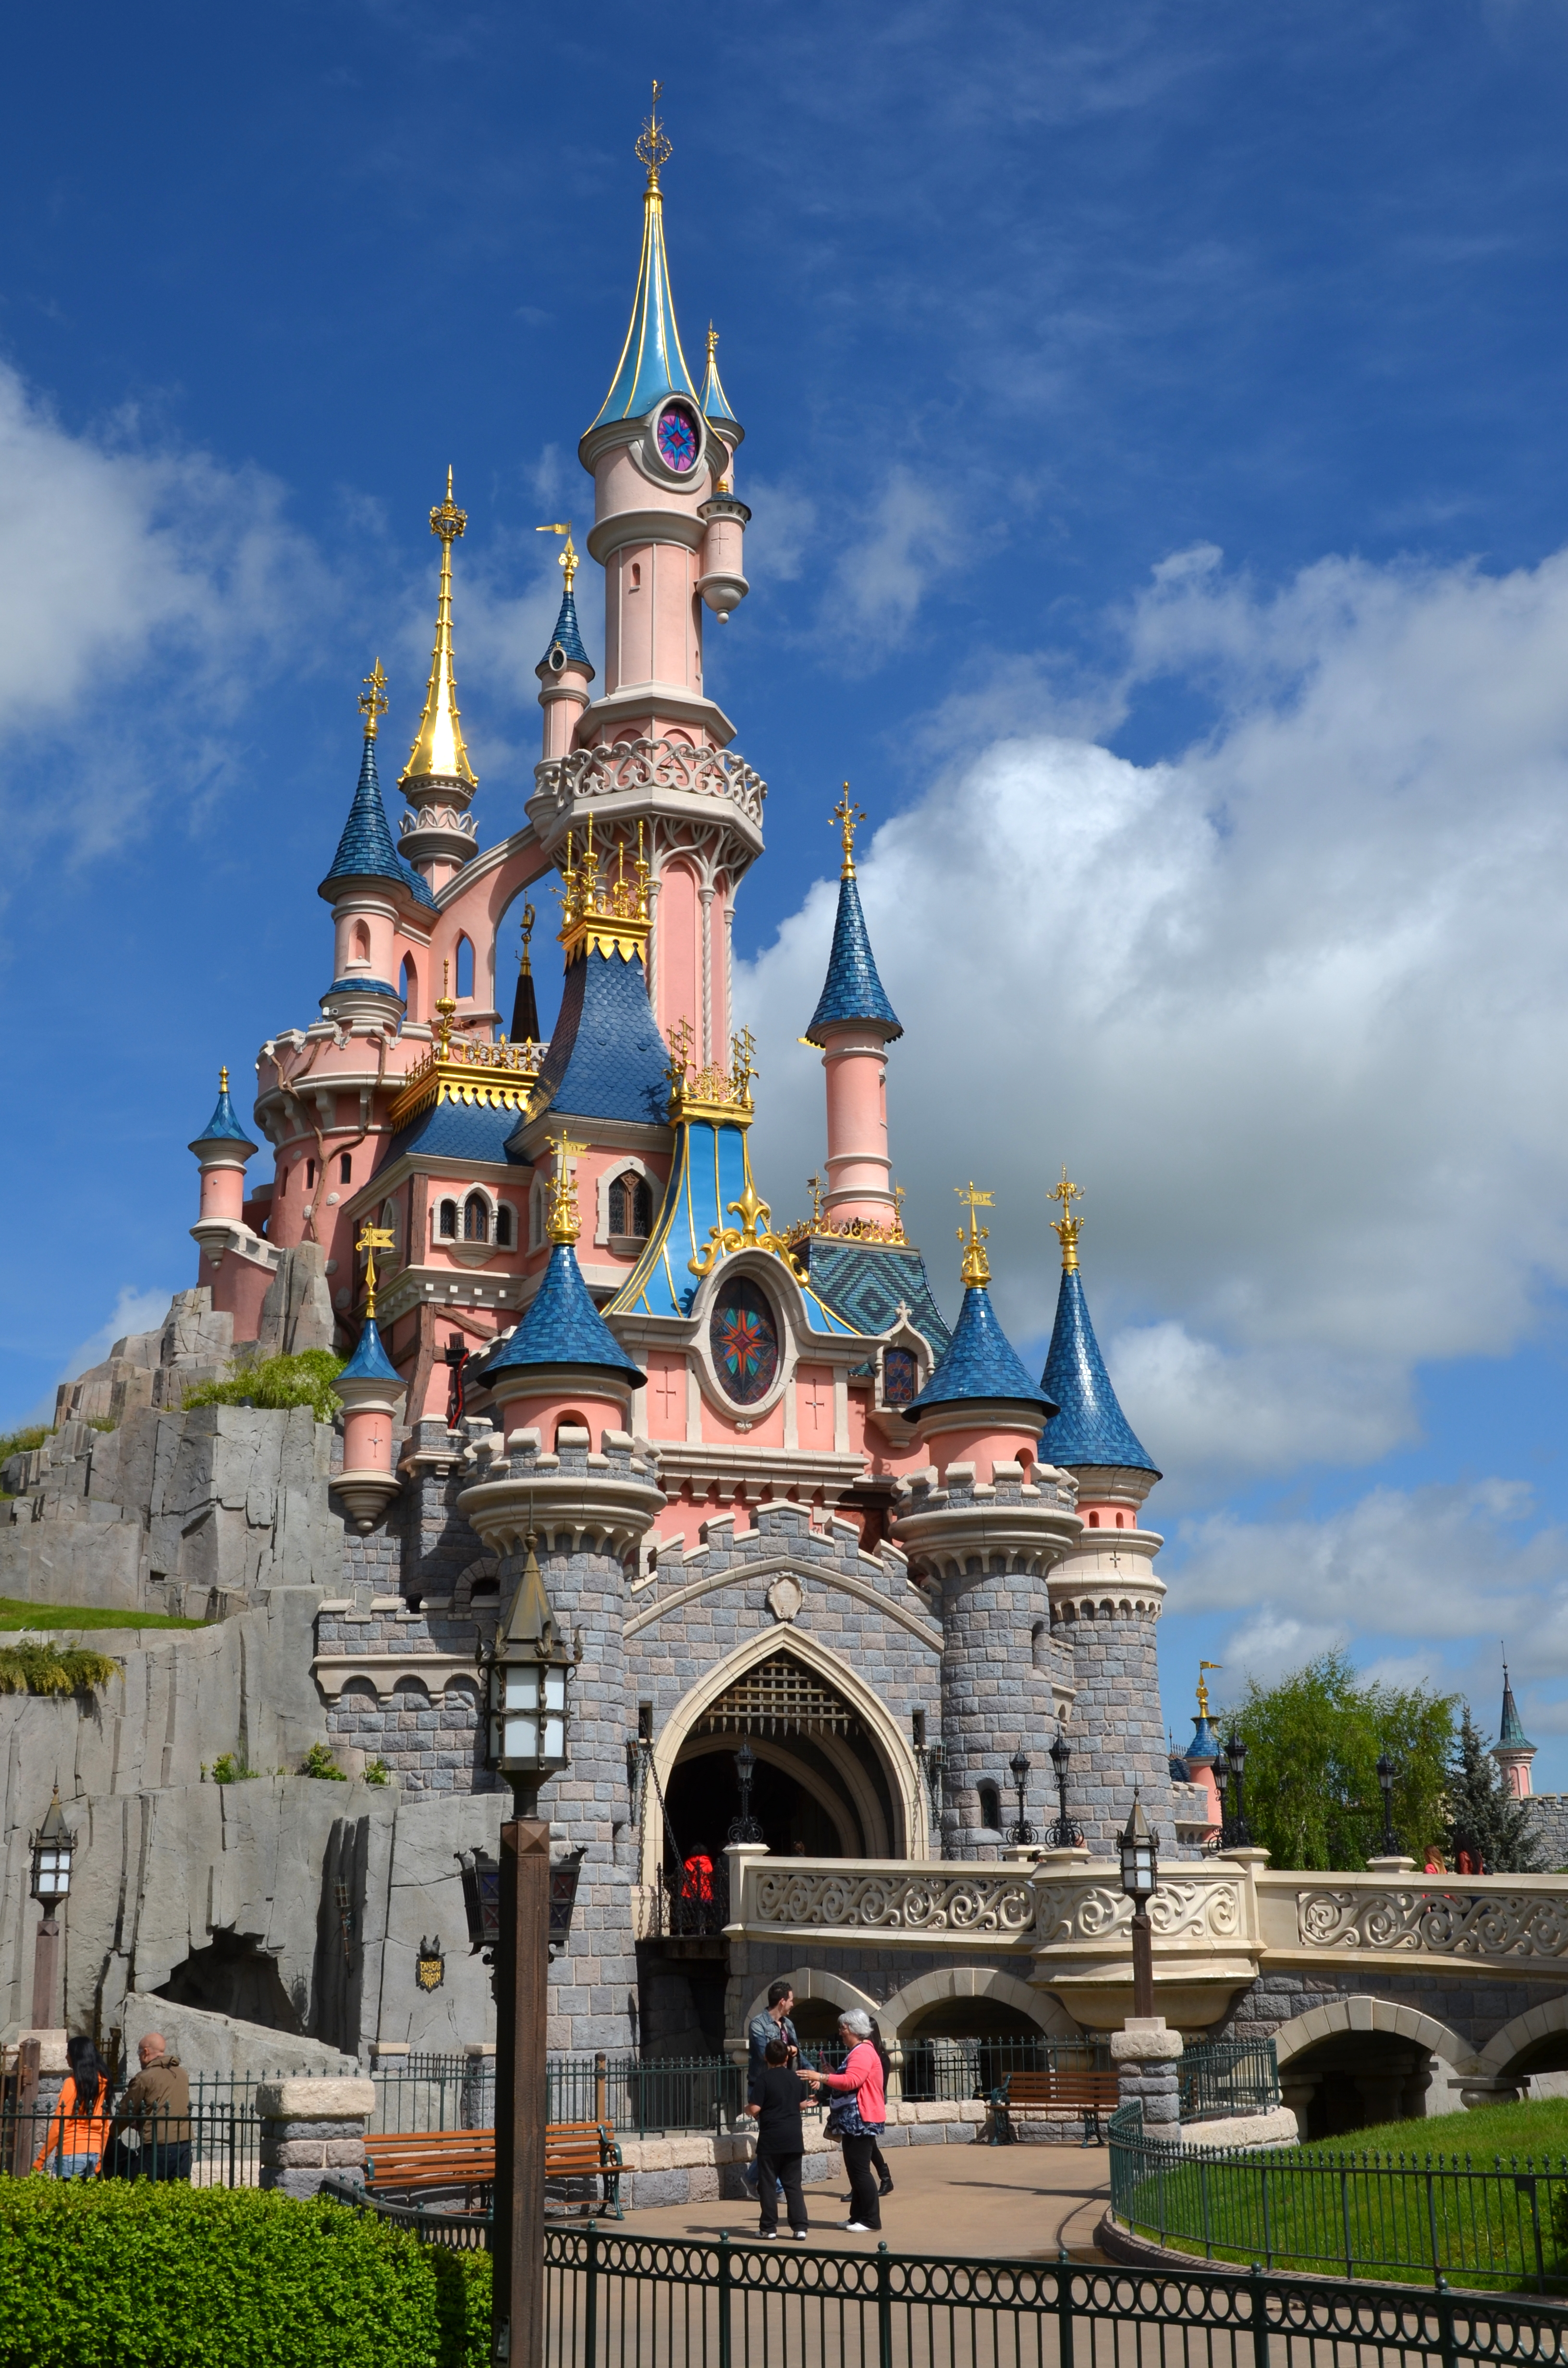 Адрес диснейленда. Парк Диснейленд. Где находится Disneyland в Америке. Парк Диснейленд в Америке. Сказочный замок в Диснейленде во Франции.